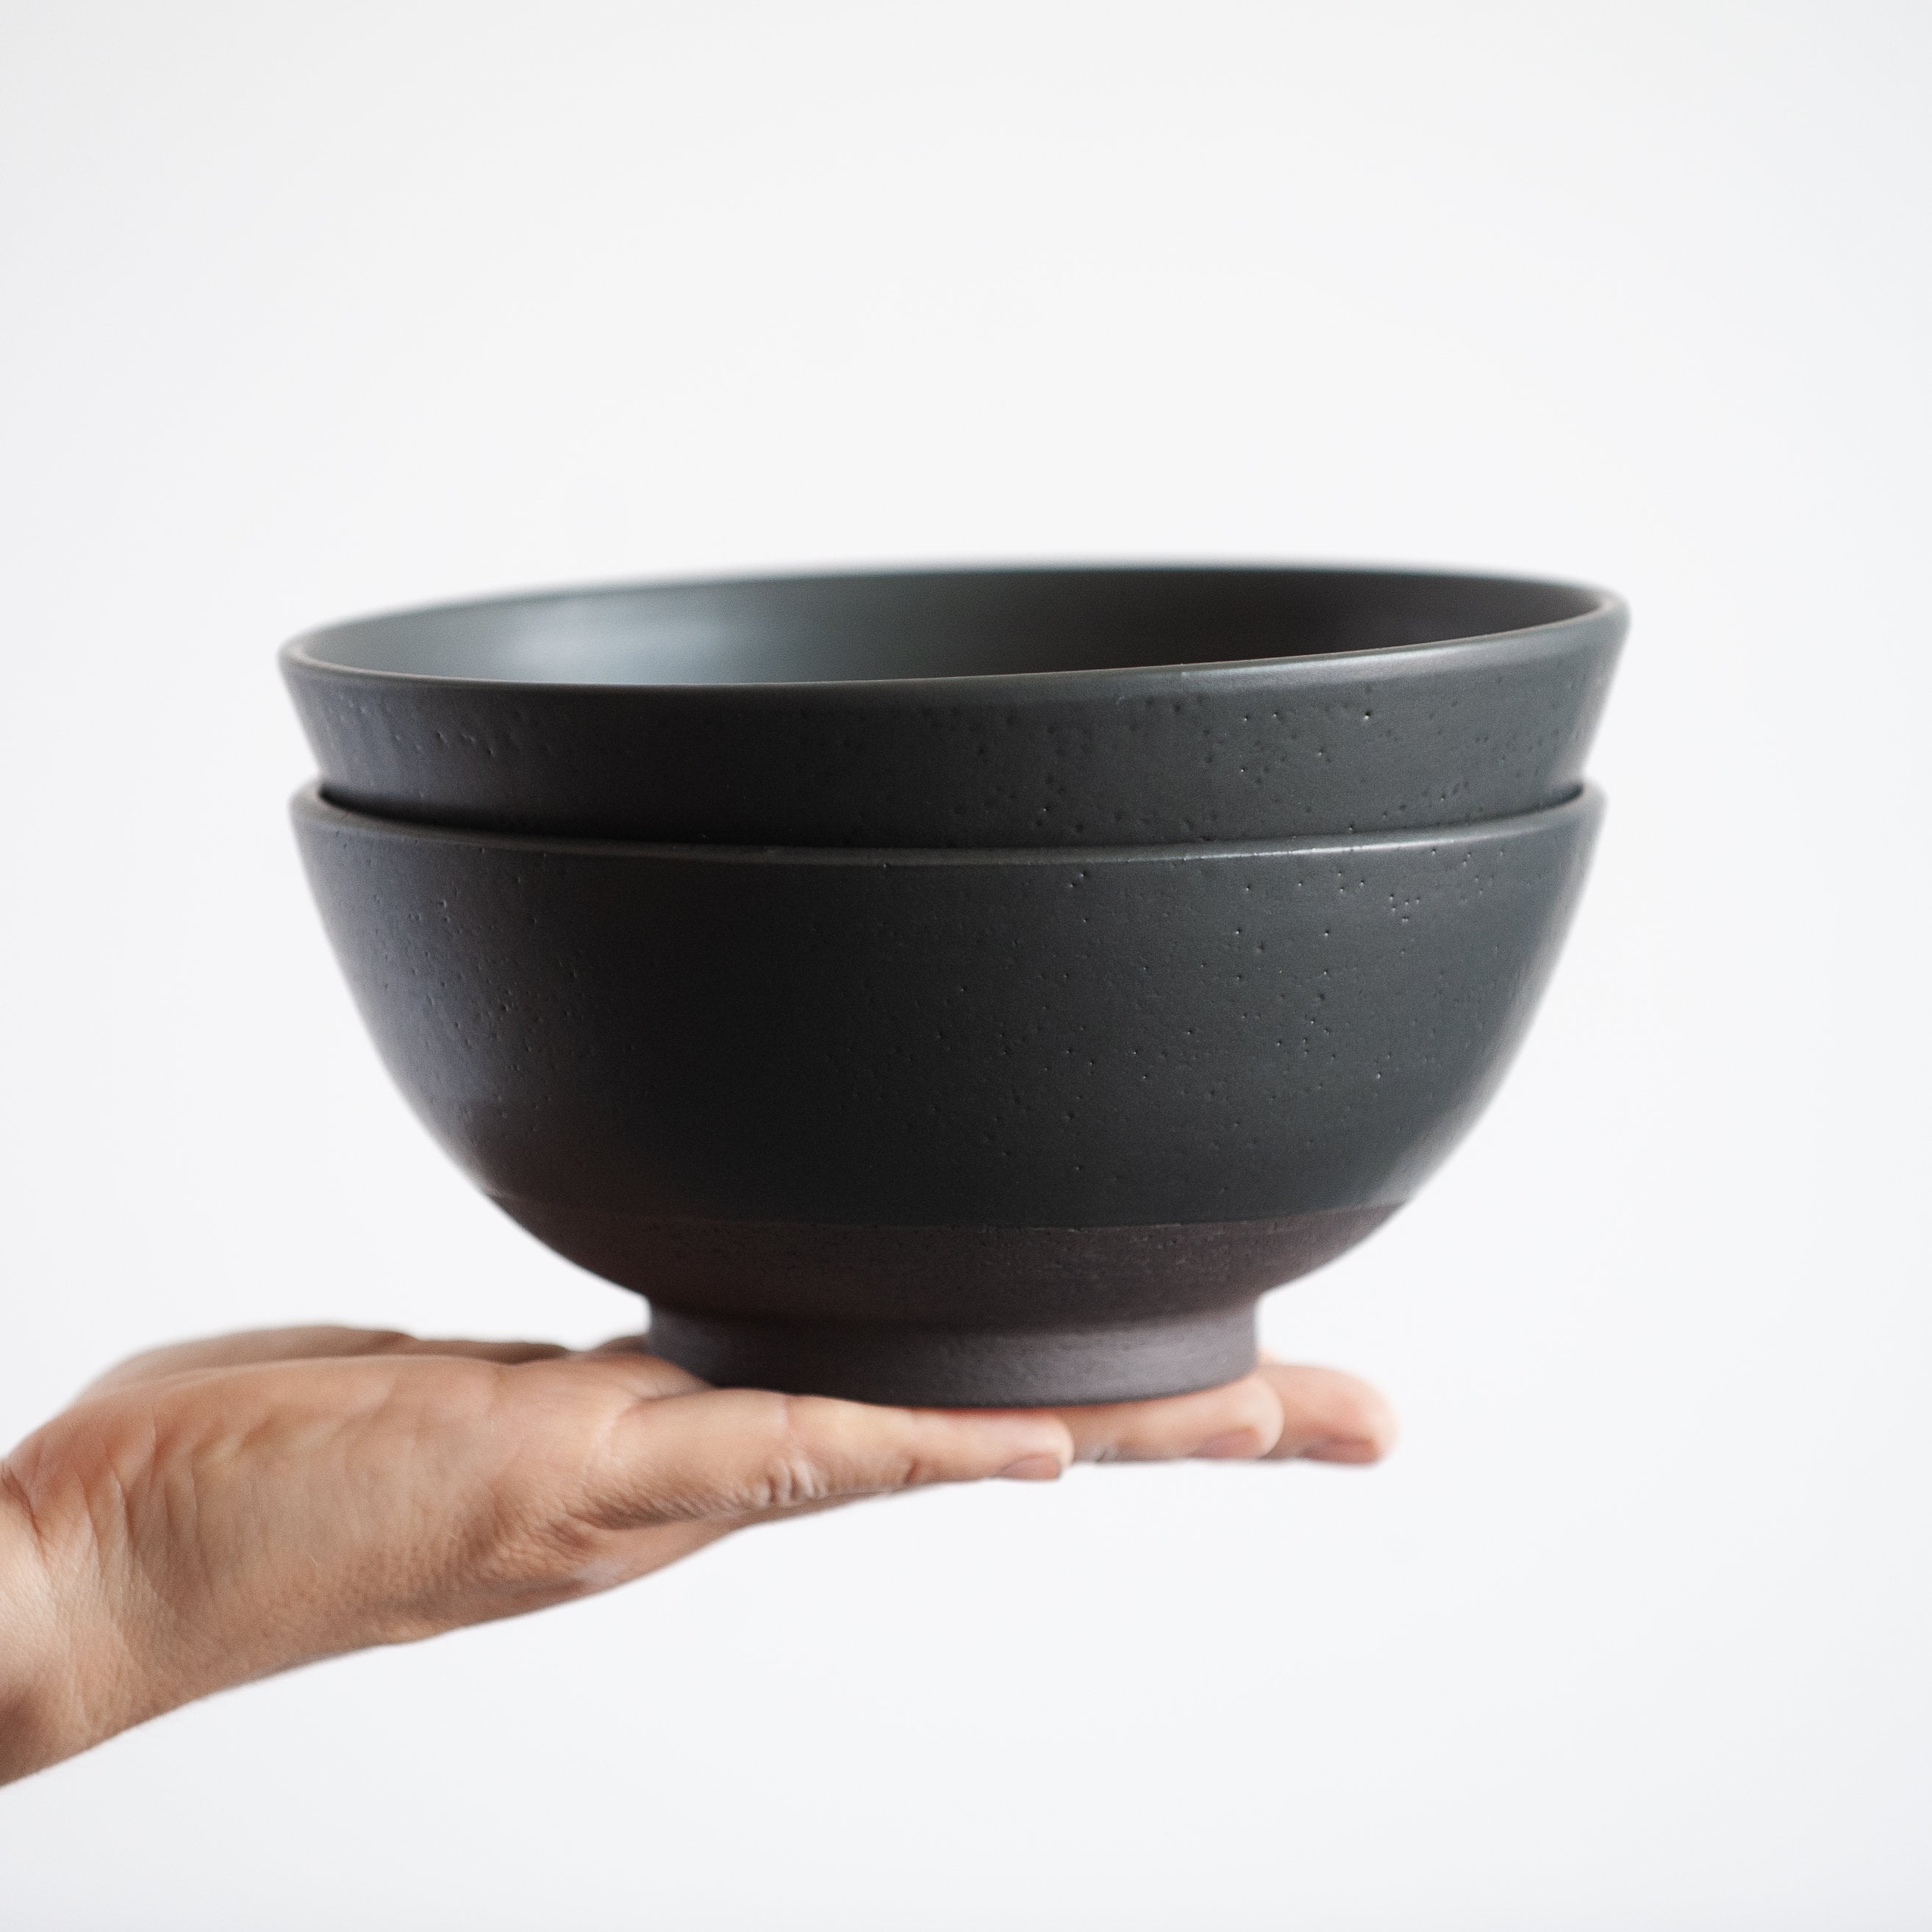 In Stock 30Oz/900Ml Set Of 2 Ramen Bowls in Total Black Color, Matt Glazed, Stoneware Handmade Ceramic, Christmas Gift